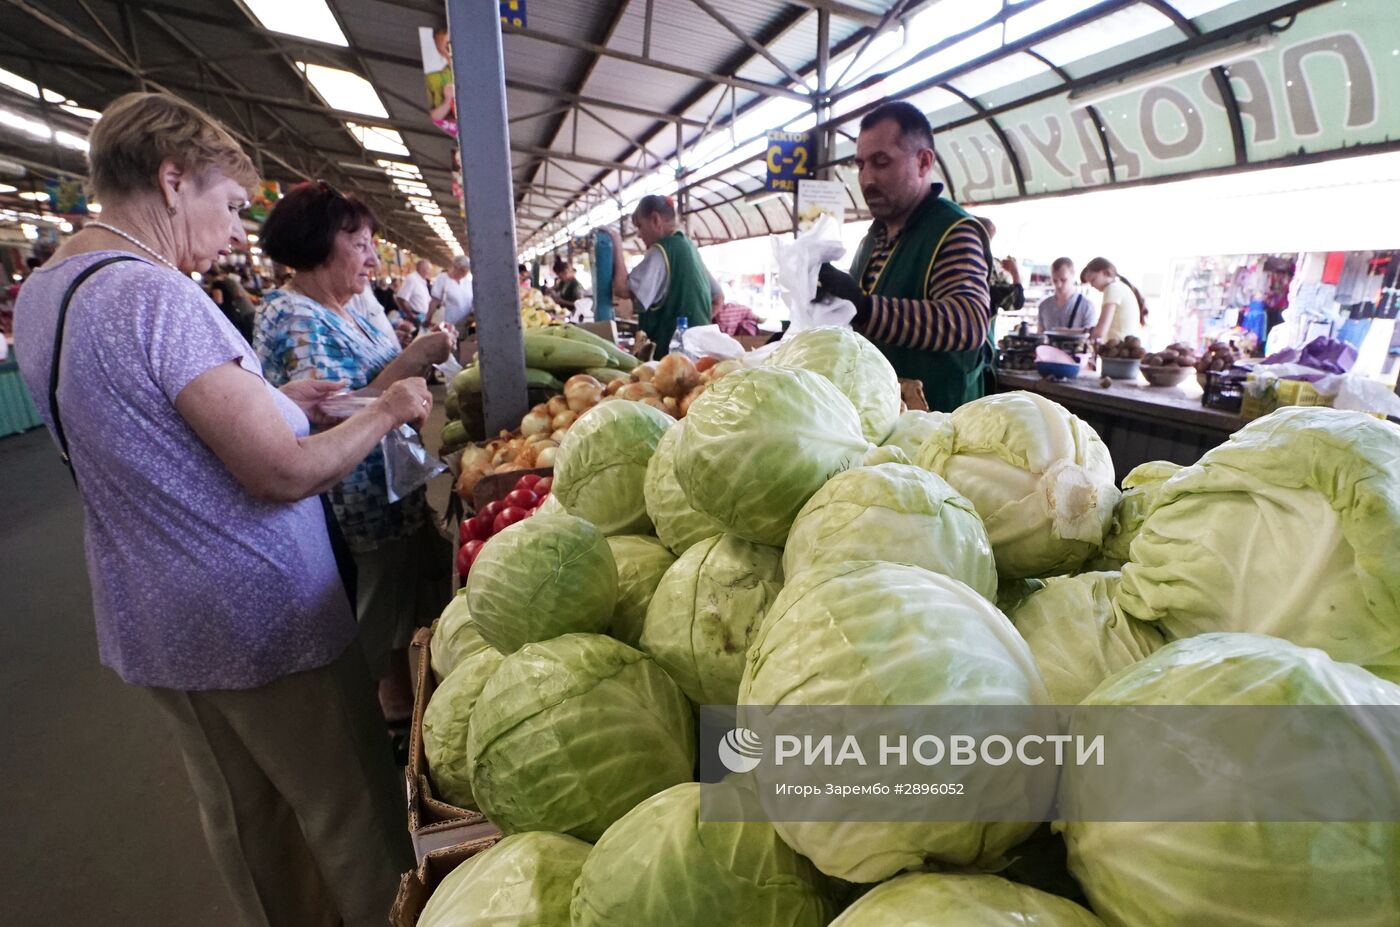 Рыночная торговля в Калининграде